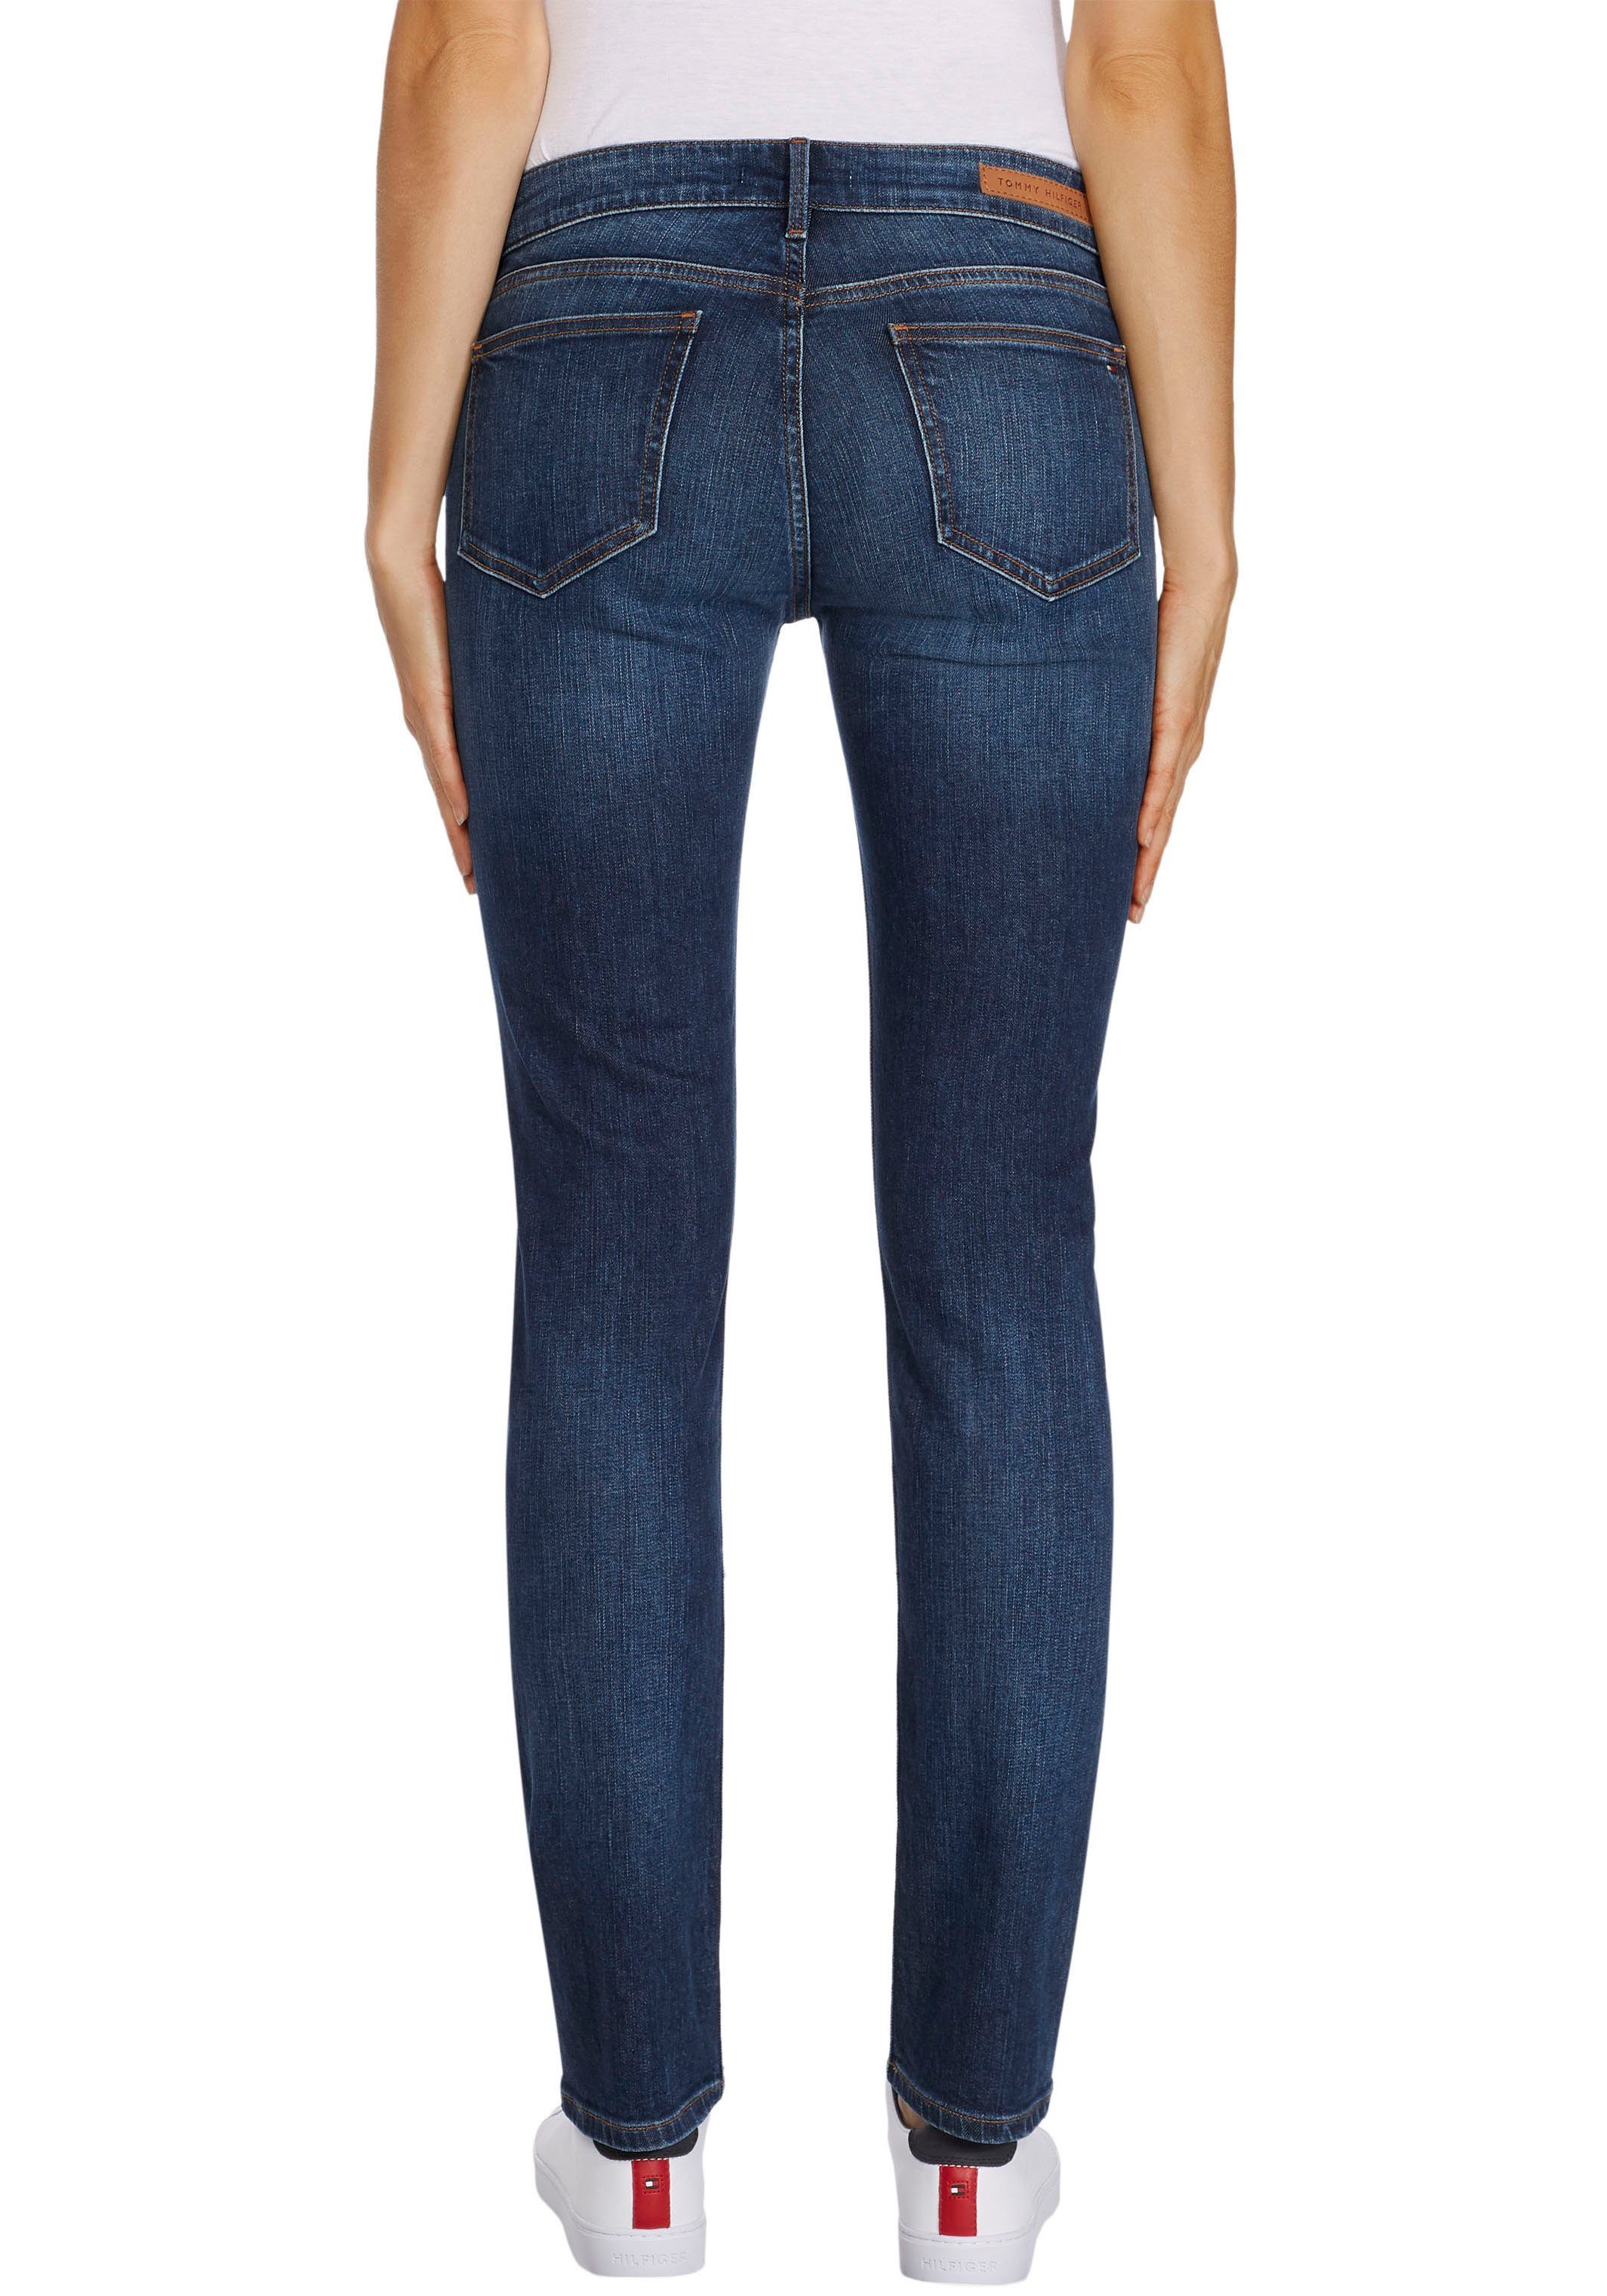 Günstige Slim-Fit Jeans online kaufen » Bis zu 40% Rabatt | OTTO